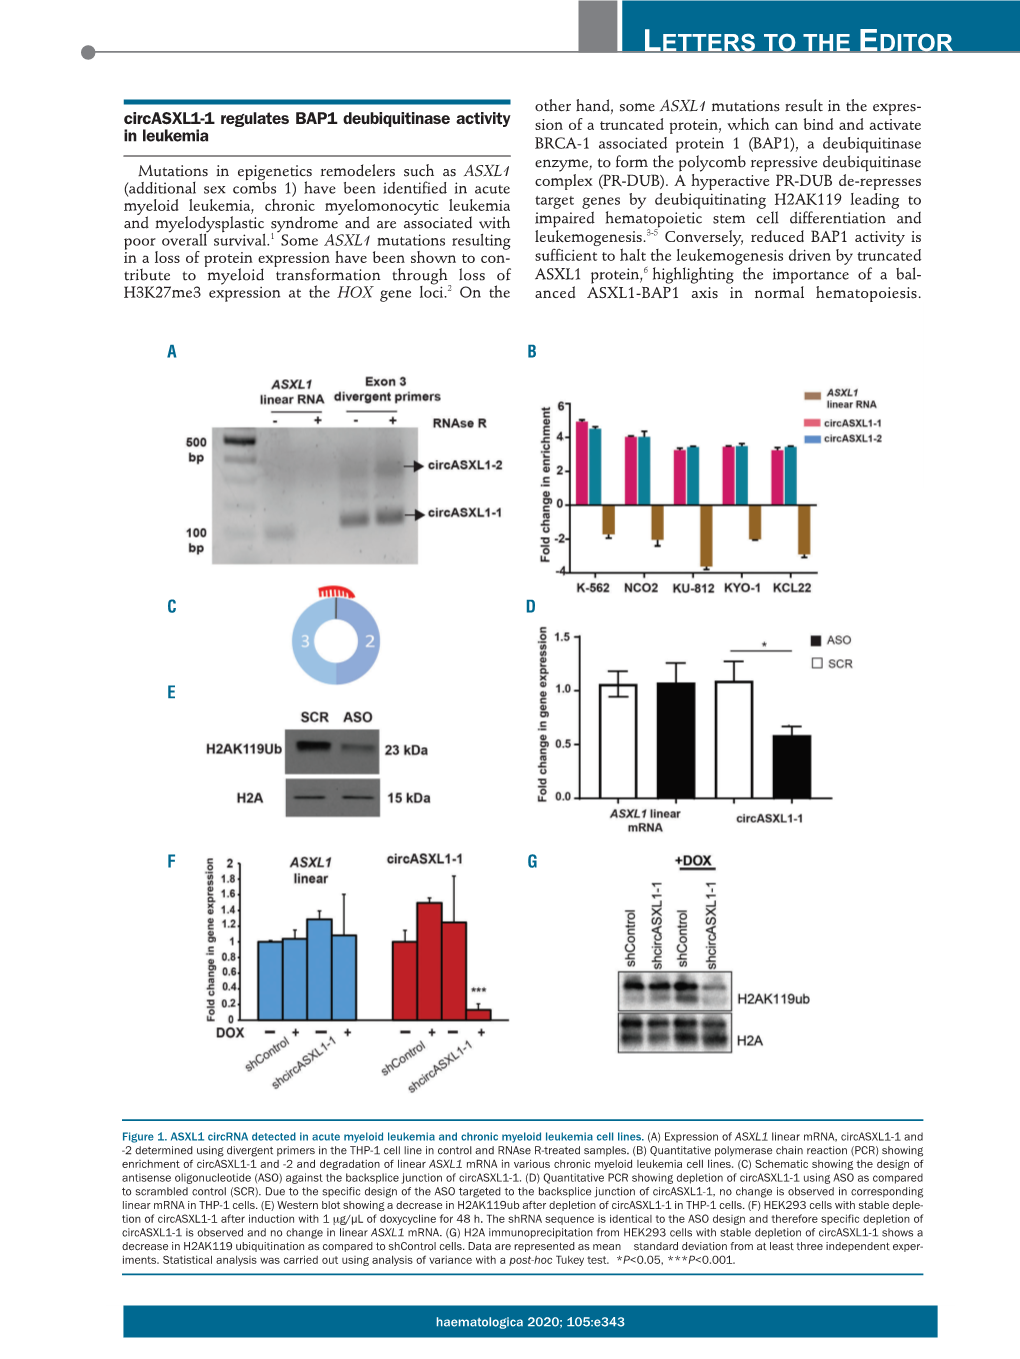 Circasxl1-1 Regulates BAP1 Deubiquitinase Activity in Leukemia